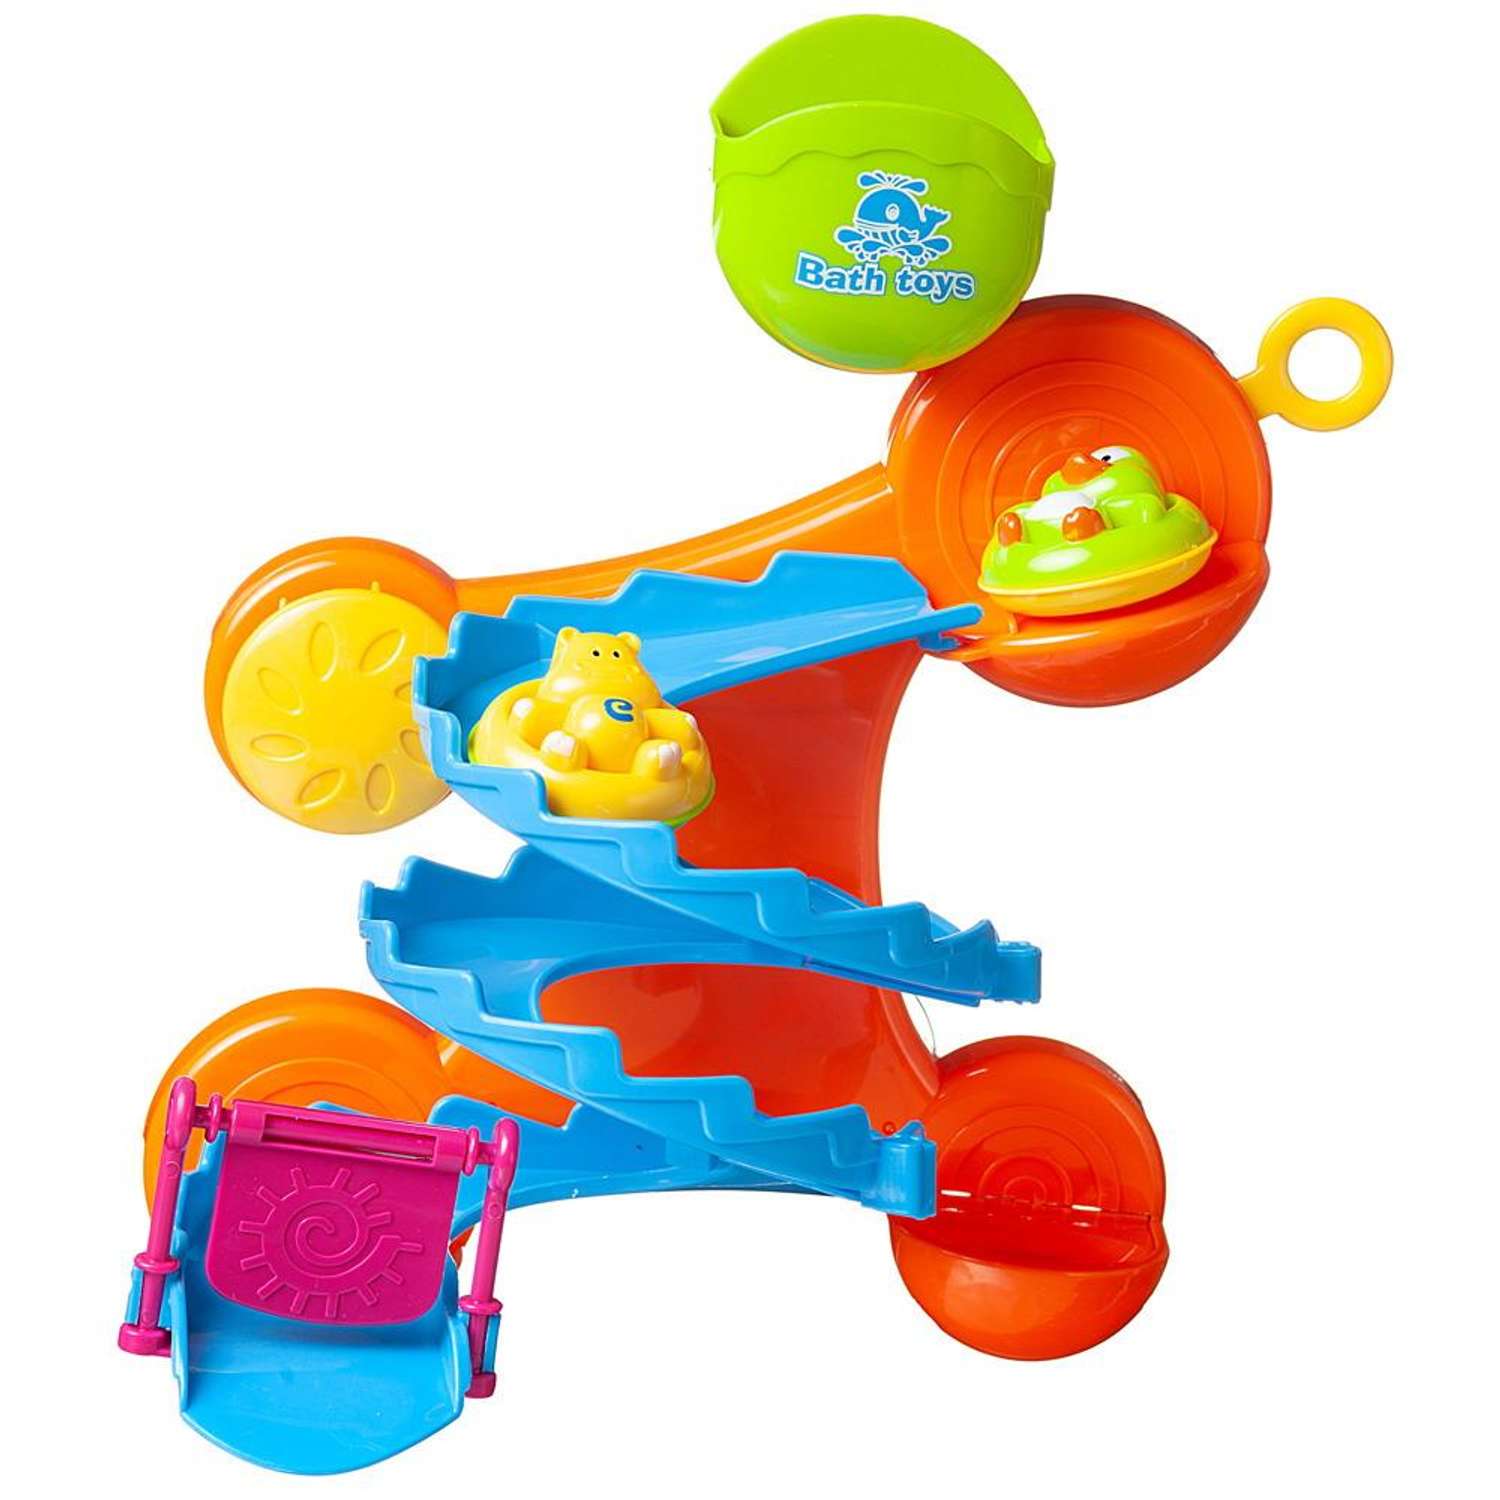 Набор игрушек для ванной ABTOYS Веселое купание горка серпантин оранжевая с 2 животными на кругах - фото 3